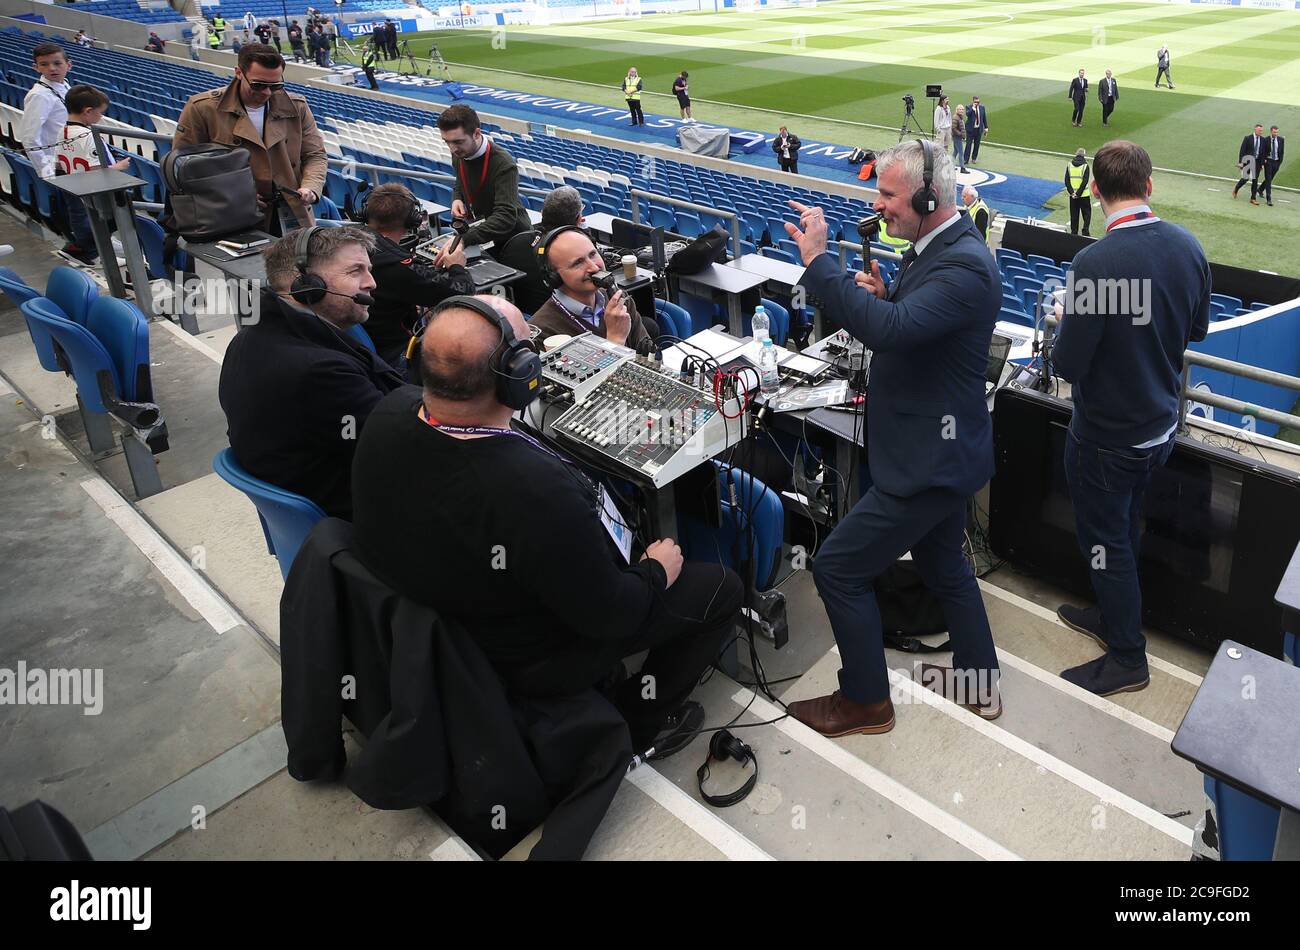 Guy Mowbray (centro), comentarista del Partido del día de la BBC TV, habla  con Radio 5 Live Mark Chapman y BBC Radio 5 Live John Murray en los stands  durante el partido